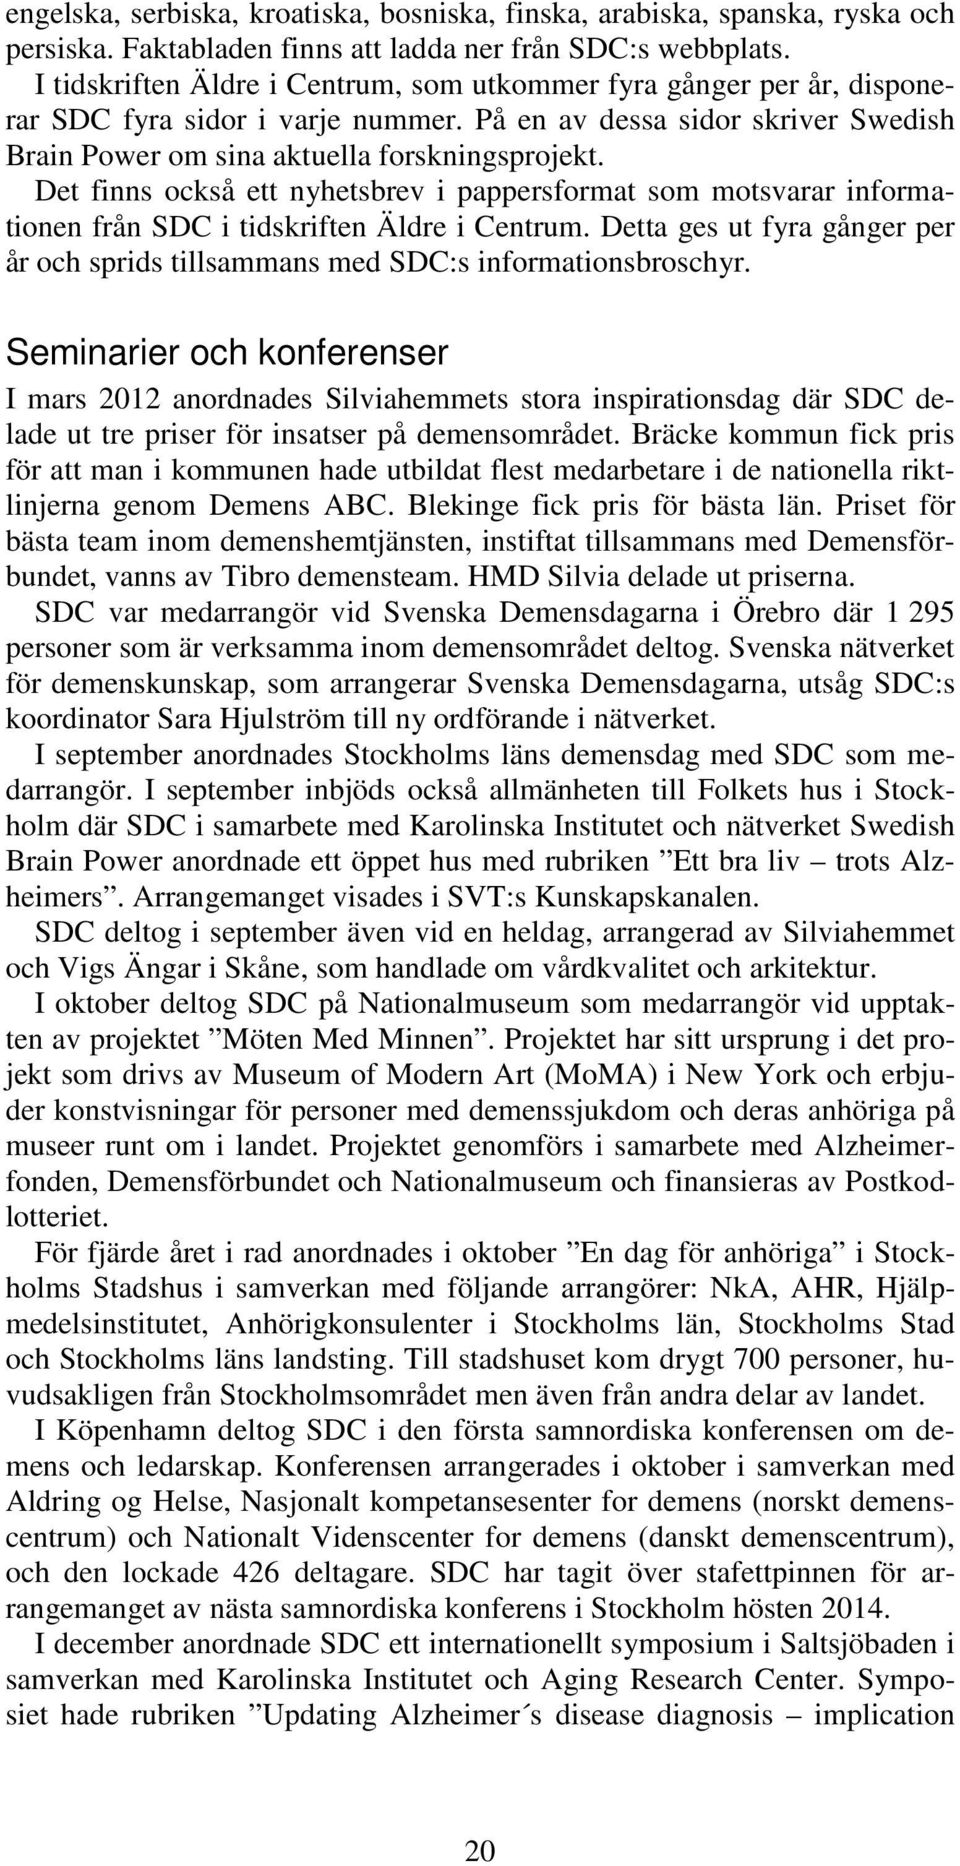 Det finns också ett nyhetsbrev i pappersformat som motsvarar informationen från SDC i tidskriften Äldre i Centrum.